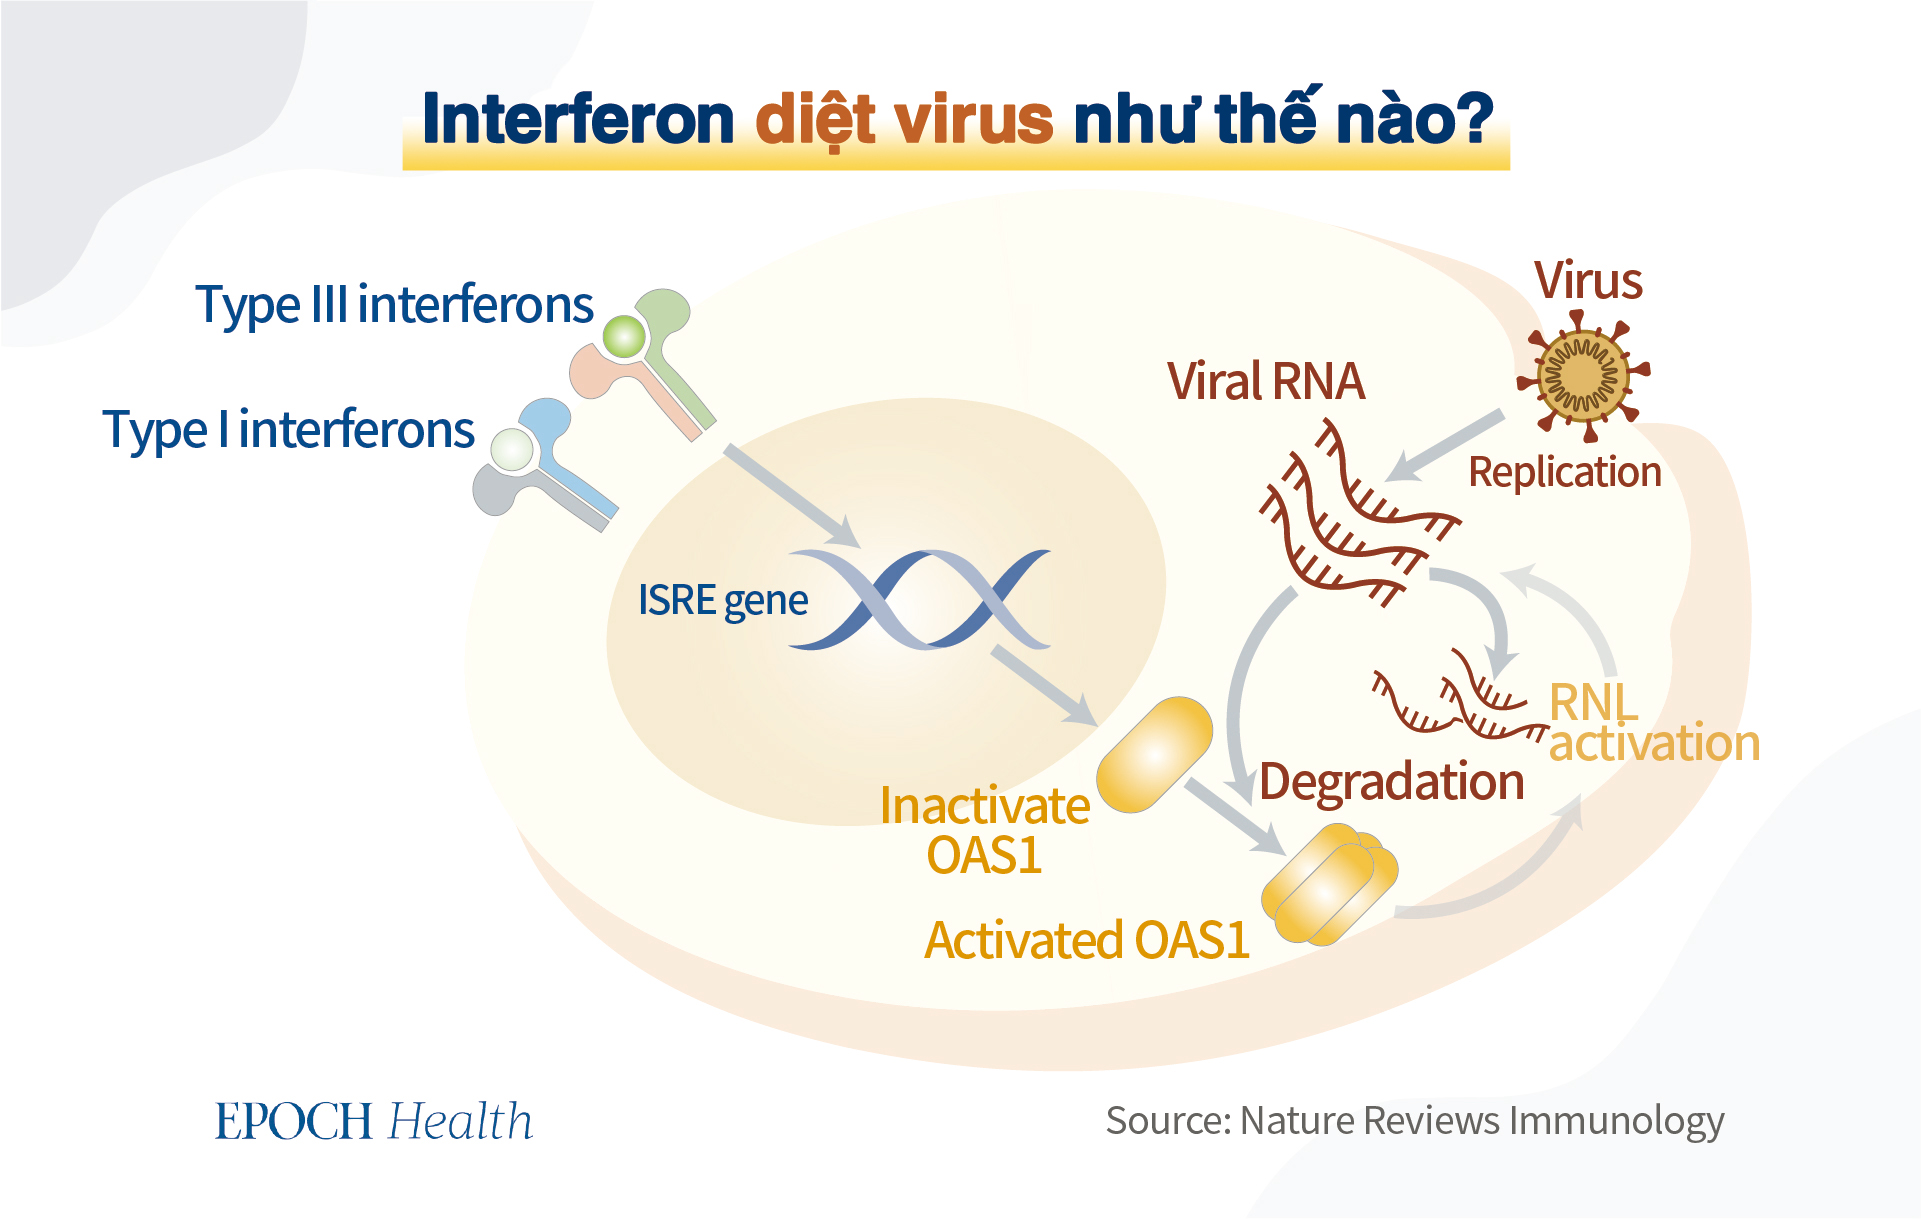 Interferon can thiệp vào sự sao chép của virus. (Ảnh: The Epoch Times)